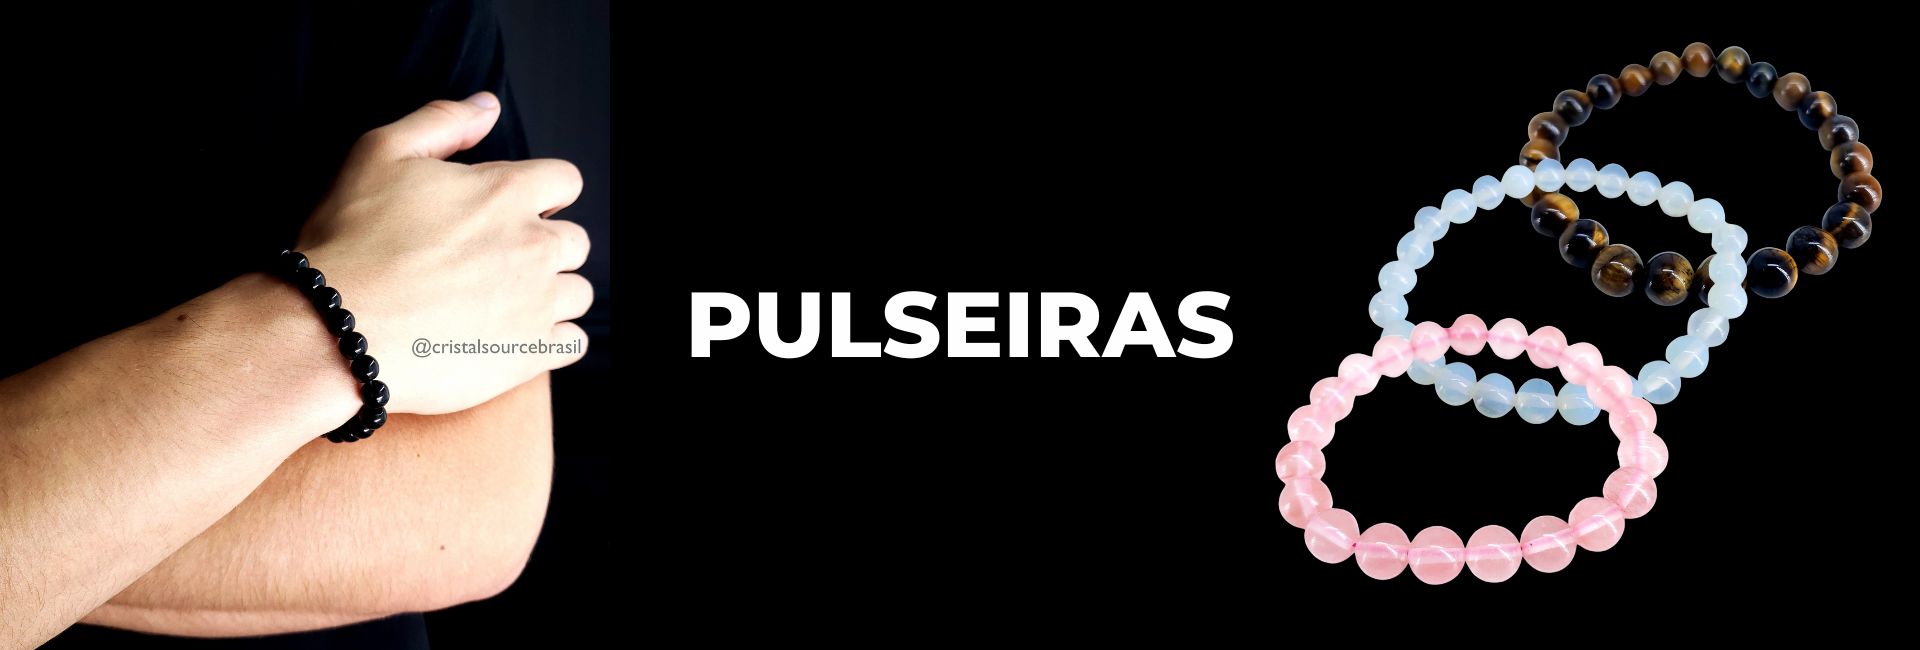 PULSEIRAS